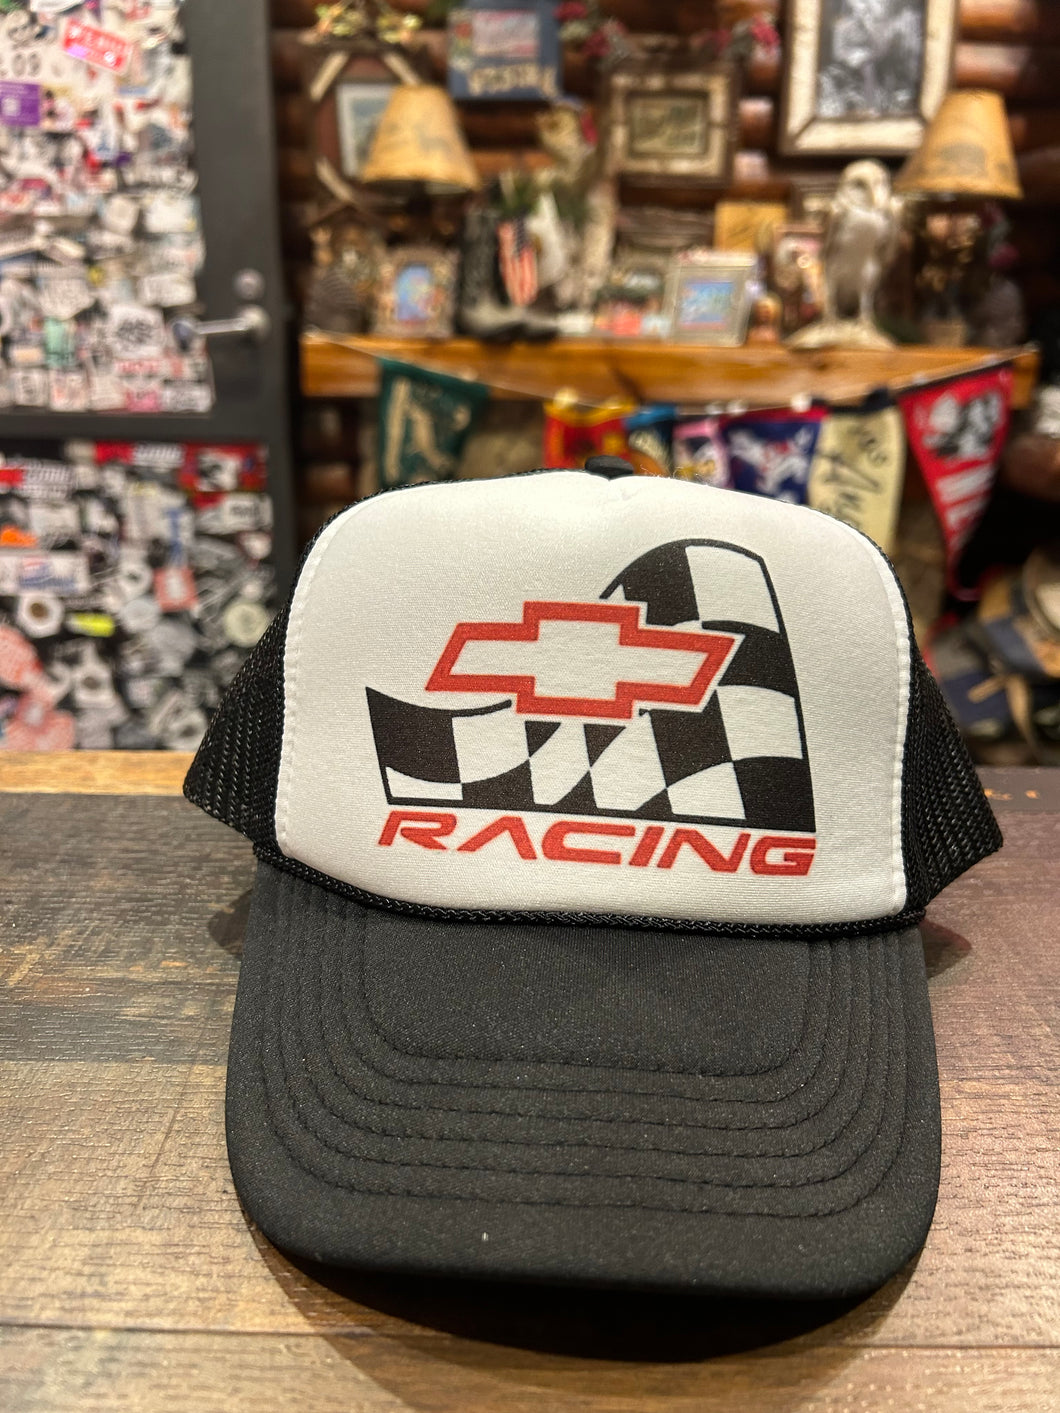 Chev Racing Trucker Cap